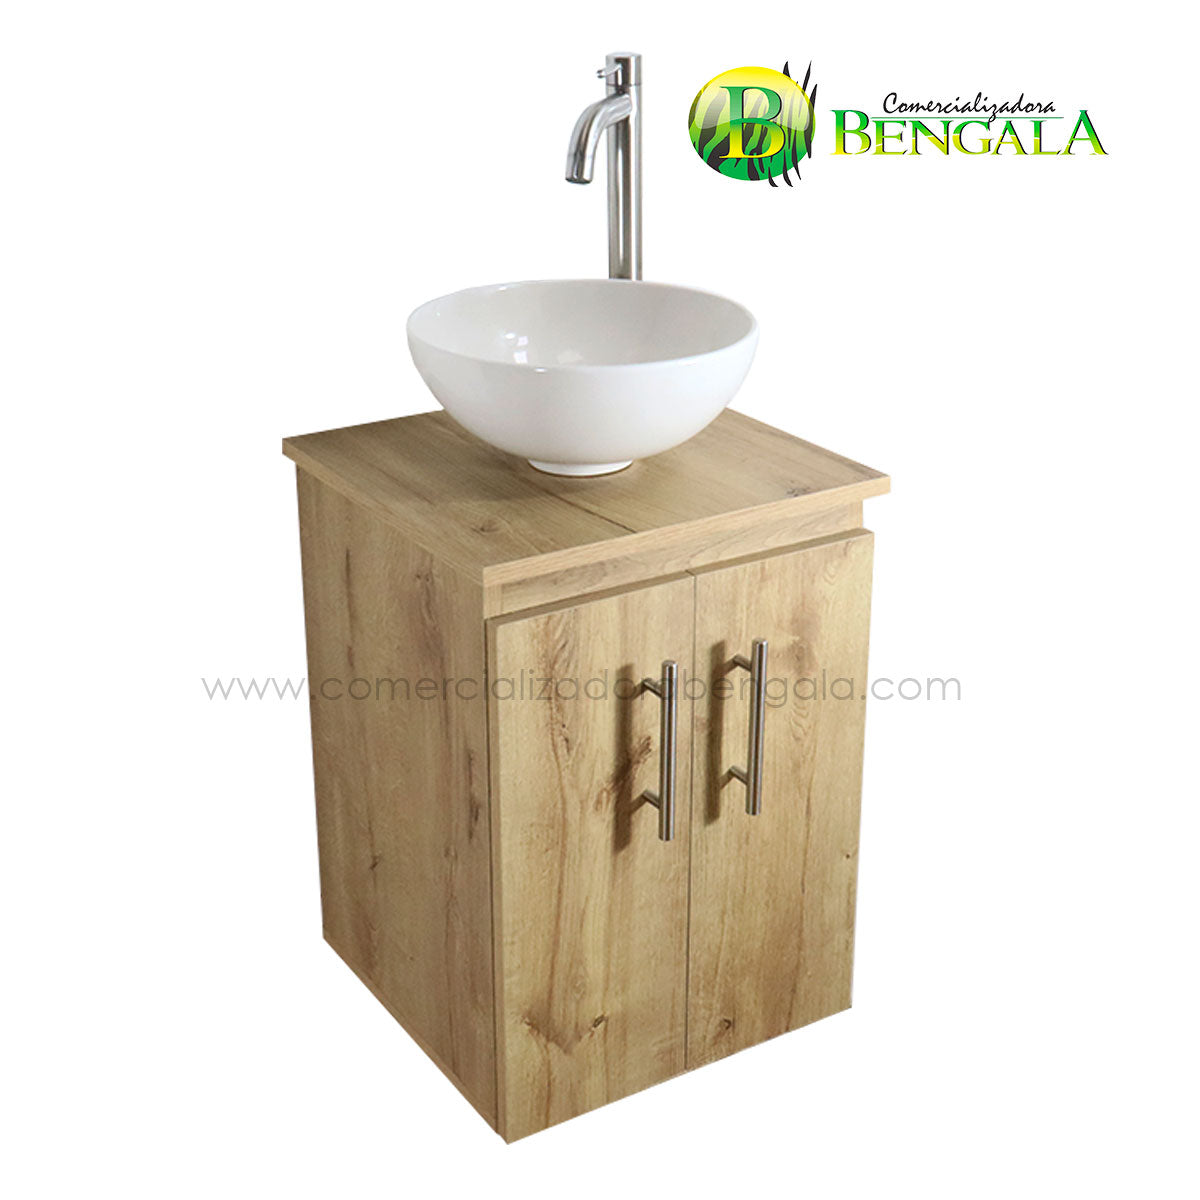 Combo mueble para baño MINI Flotante 38X35 cm – COMERCIALIZADORA